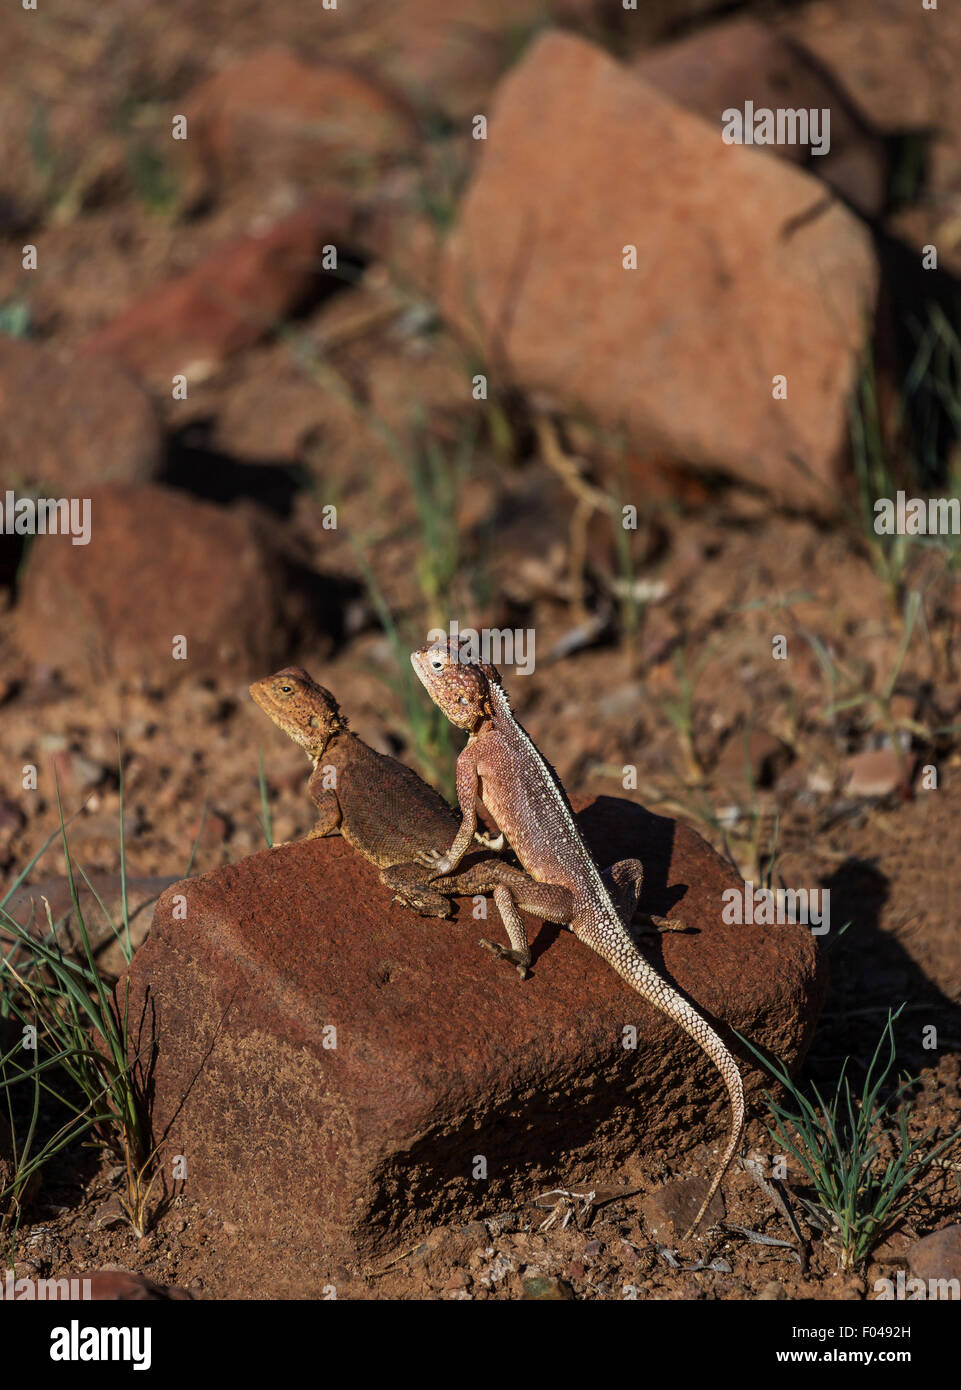 El agama común, de cabeza roja, o rainbow rock Agama agama, una especie de lagarto de la familia Agamidae, Namibia, África Foto de stock